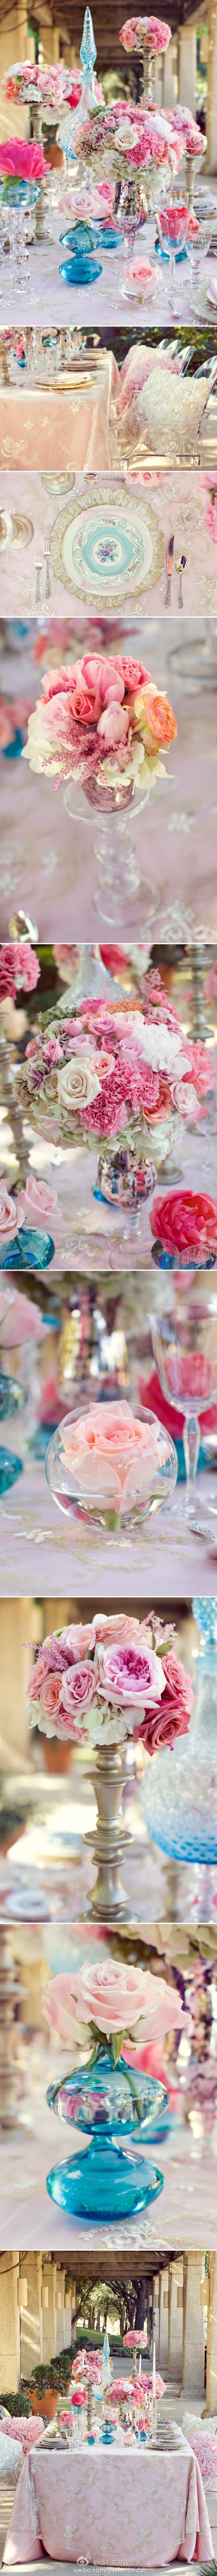 浪漫甜蜜的蓝色、粉色下午茶餐桌布置，餐具、器皿、花艺、餐桌摆设都非常有复古调